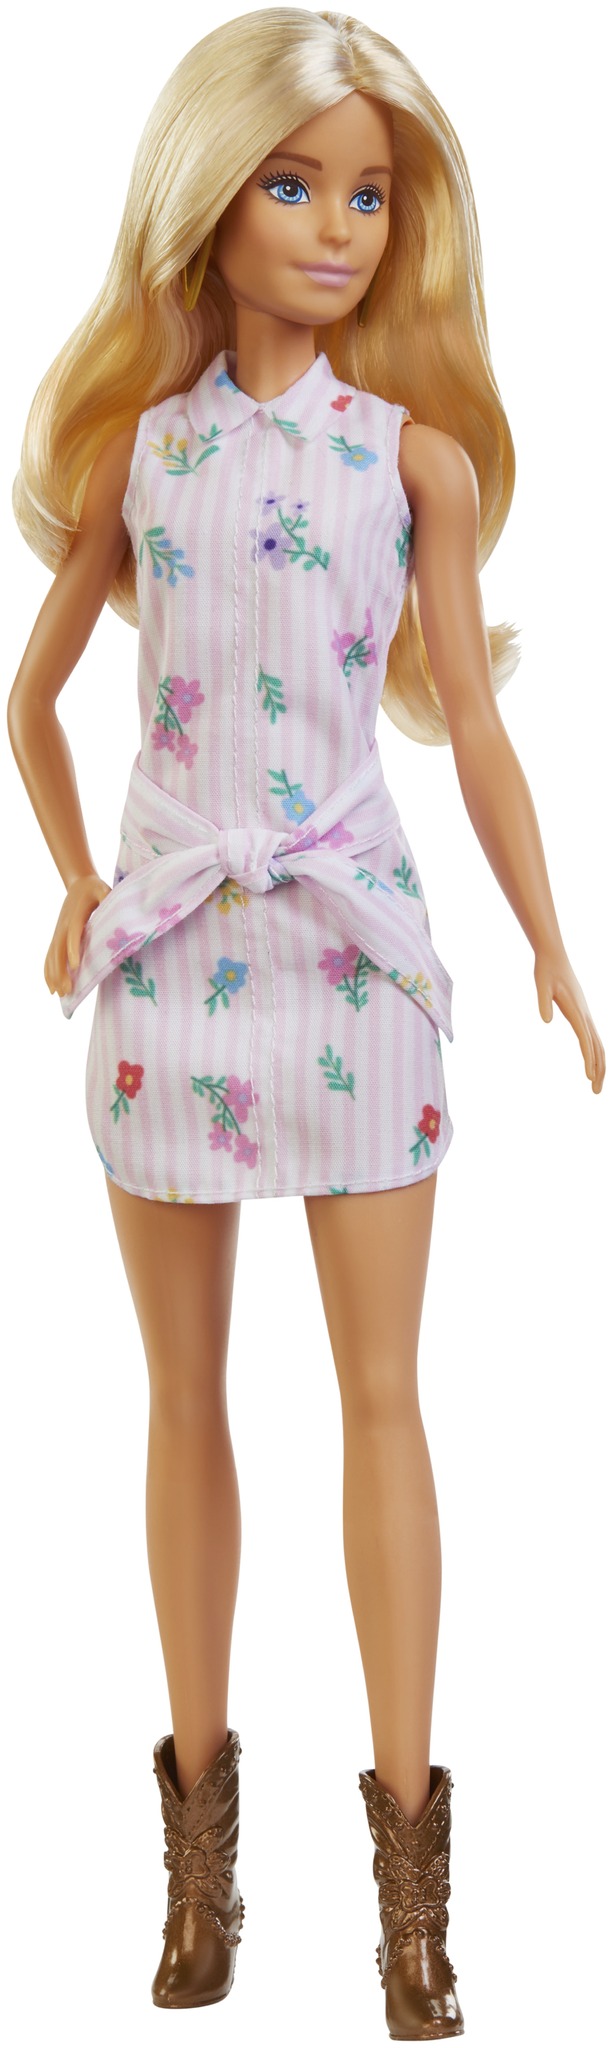 Barbie Fashionistas Große Teenagerpuppen Mädchen 33 cm blau/weiß 